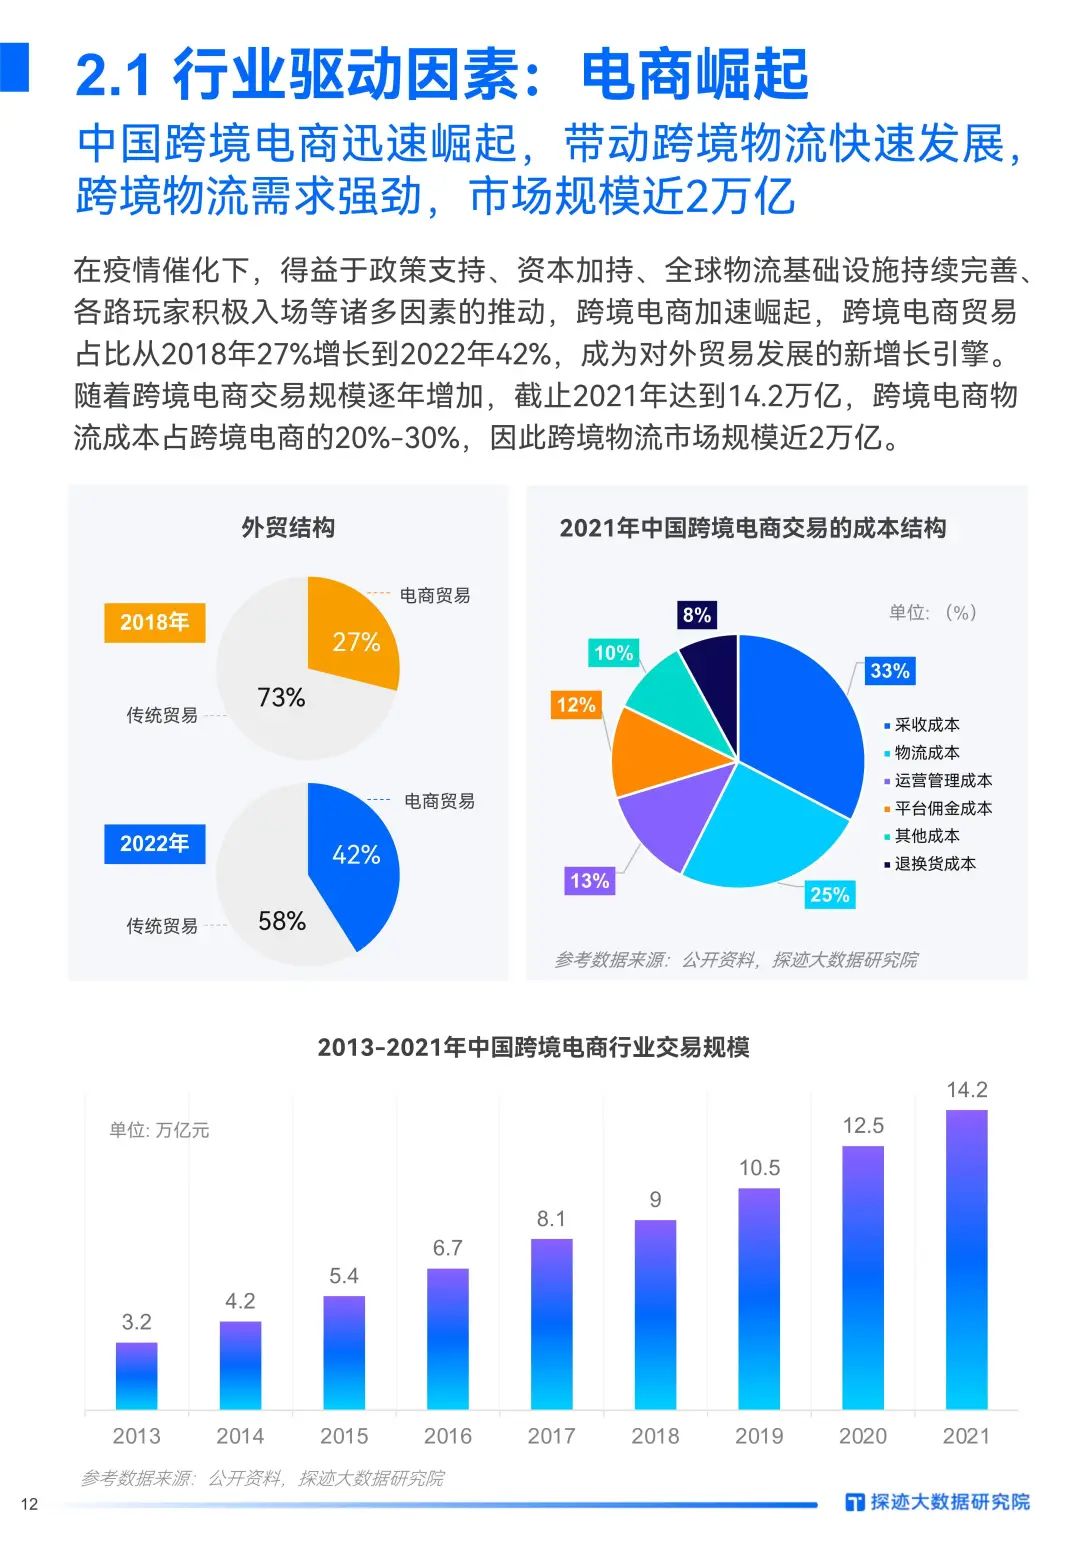 中国跨境出口B2C电商北美篇 | 2020-2021年度发展报告_市场